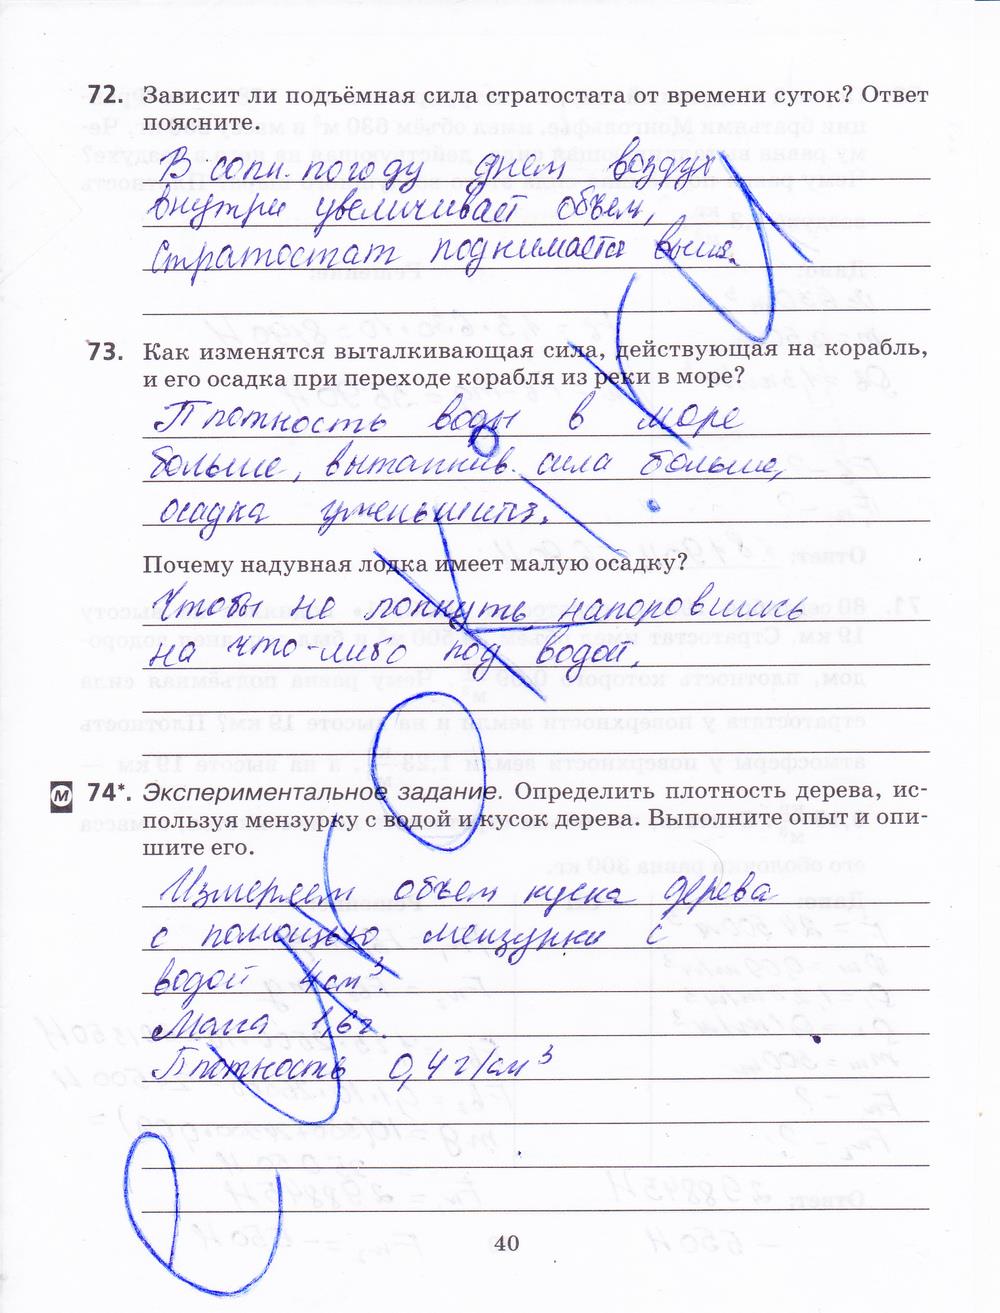 гдз 8 класс рабочая тетрадь страница 40 физика Пурышева, Важеевская